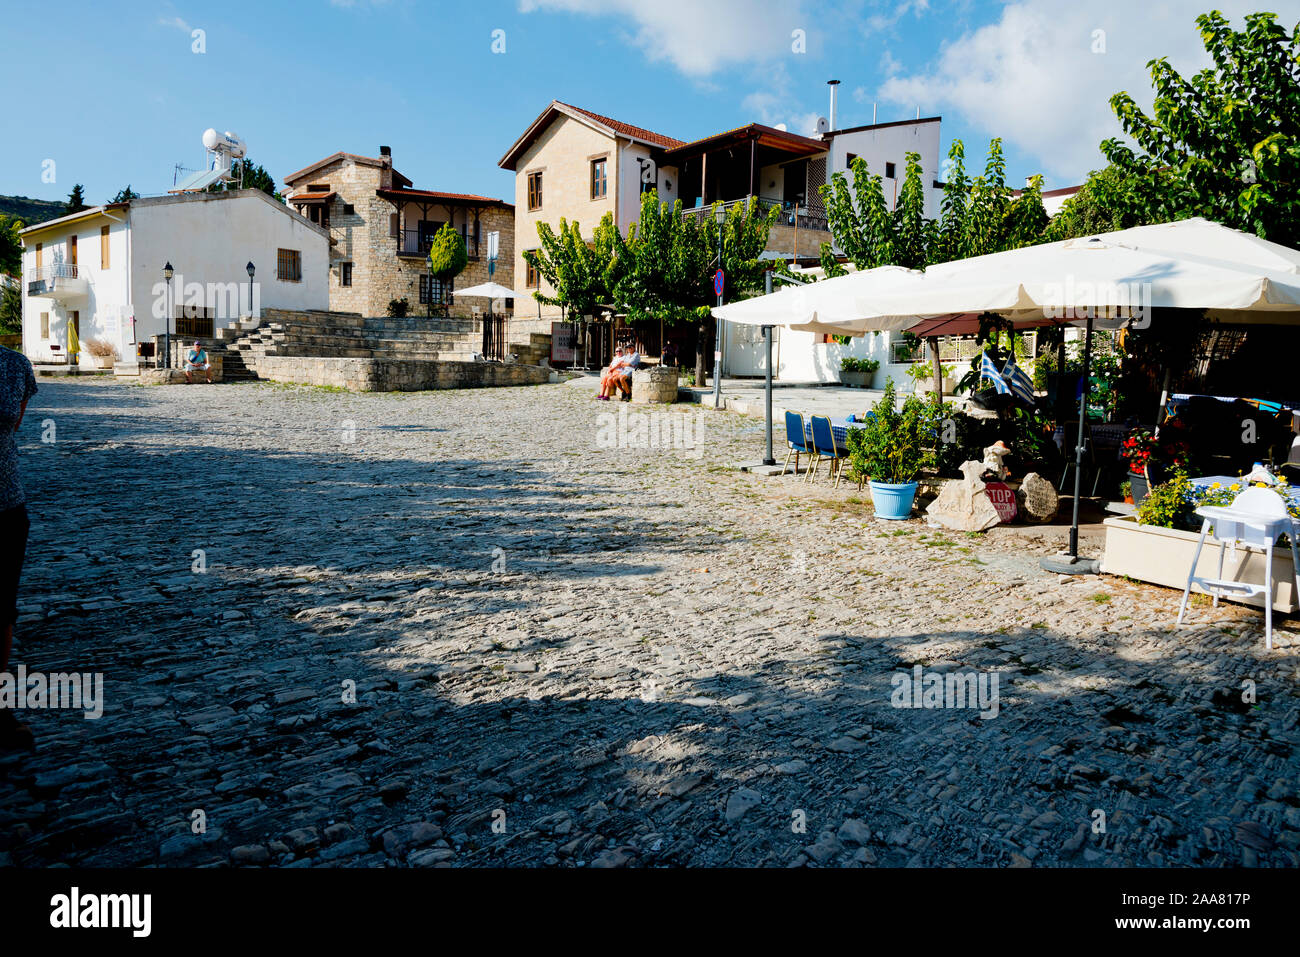 Rues pavées, dans le pittoresque village de Omodos dans les montagnes Troodos, à Chypre avec des maisons blanches, des rues étroites. Banque D'Images